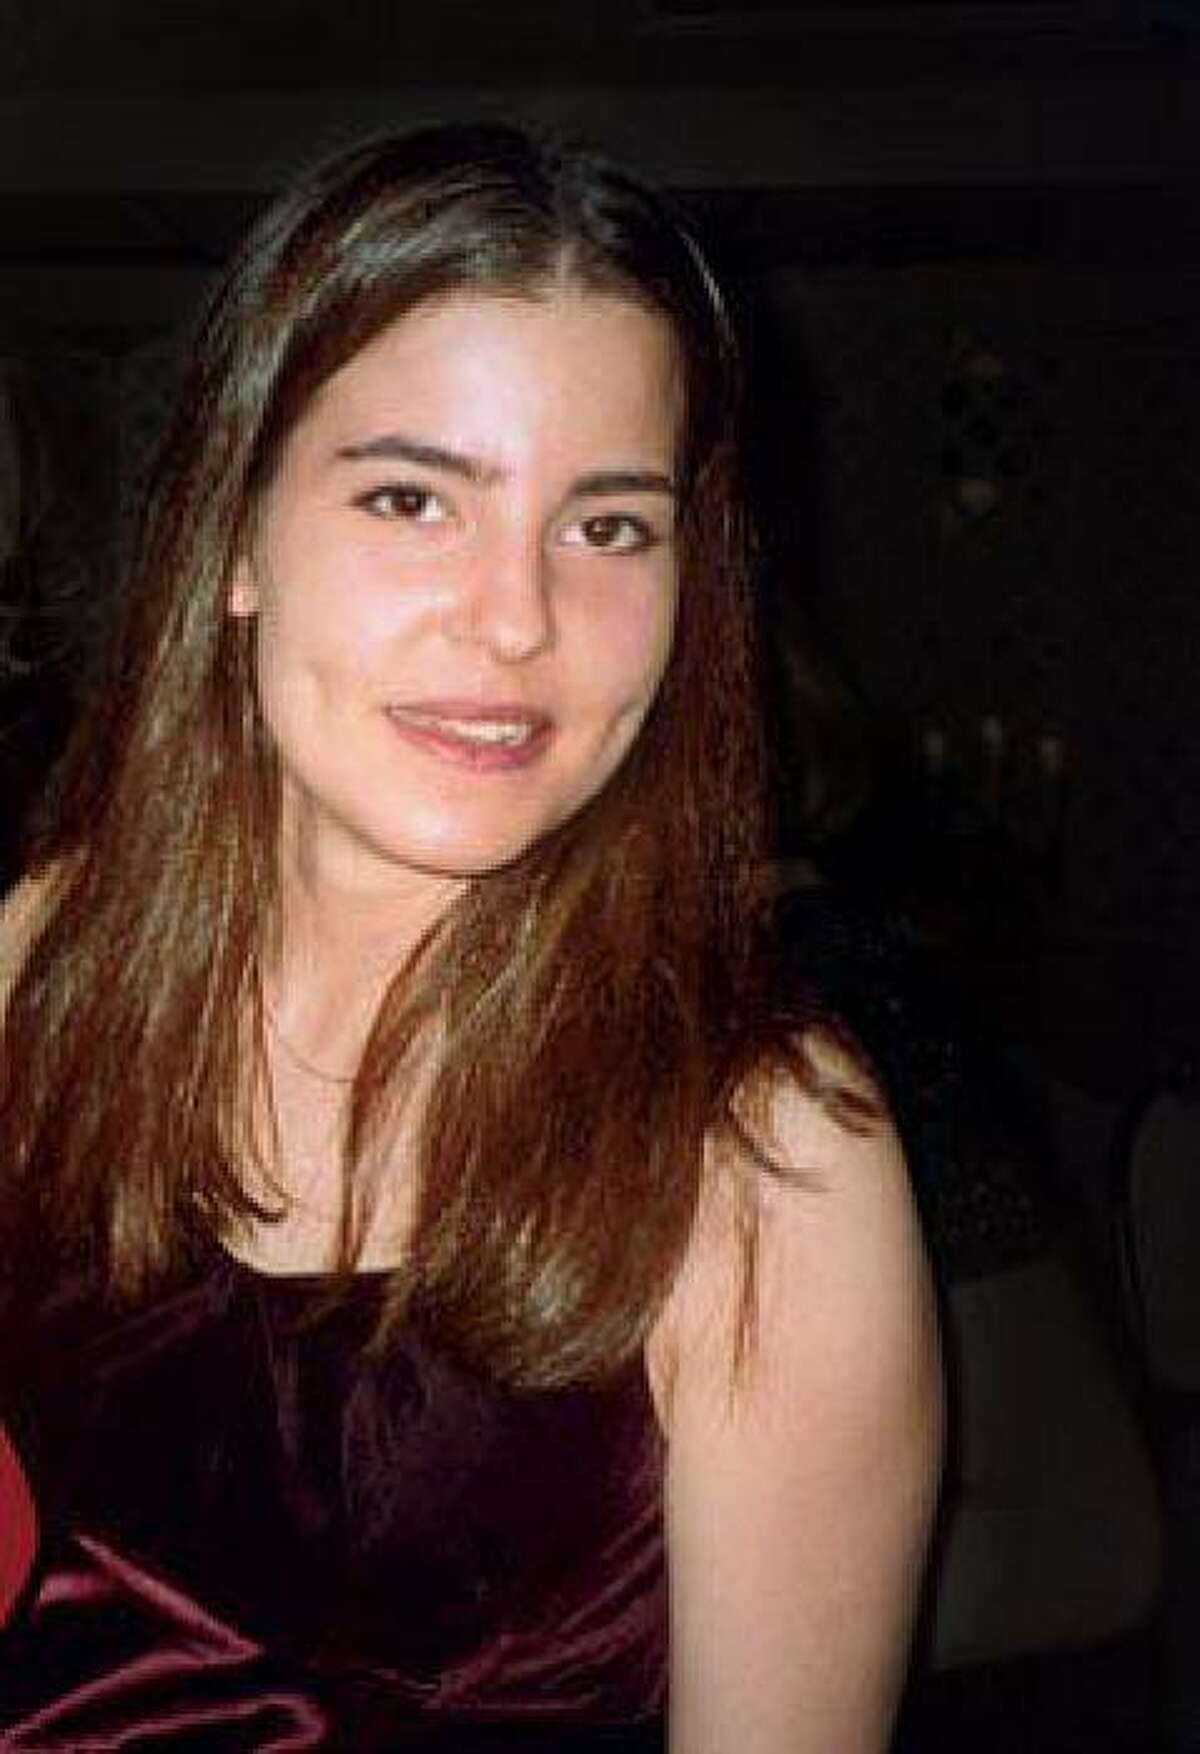 Kristen Modafferi disappeared from San Francisco in 1997. Kristen Modafferi. Photo courtesy of Bob and Debbie Modafferi.